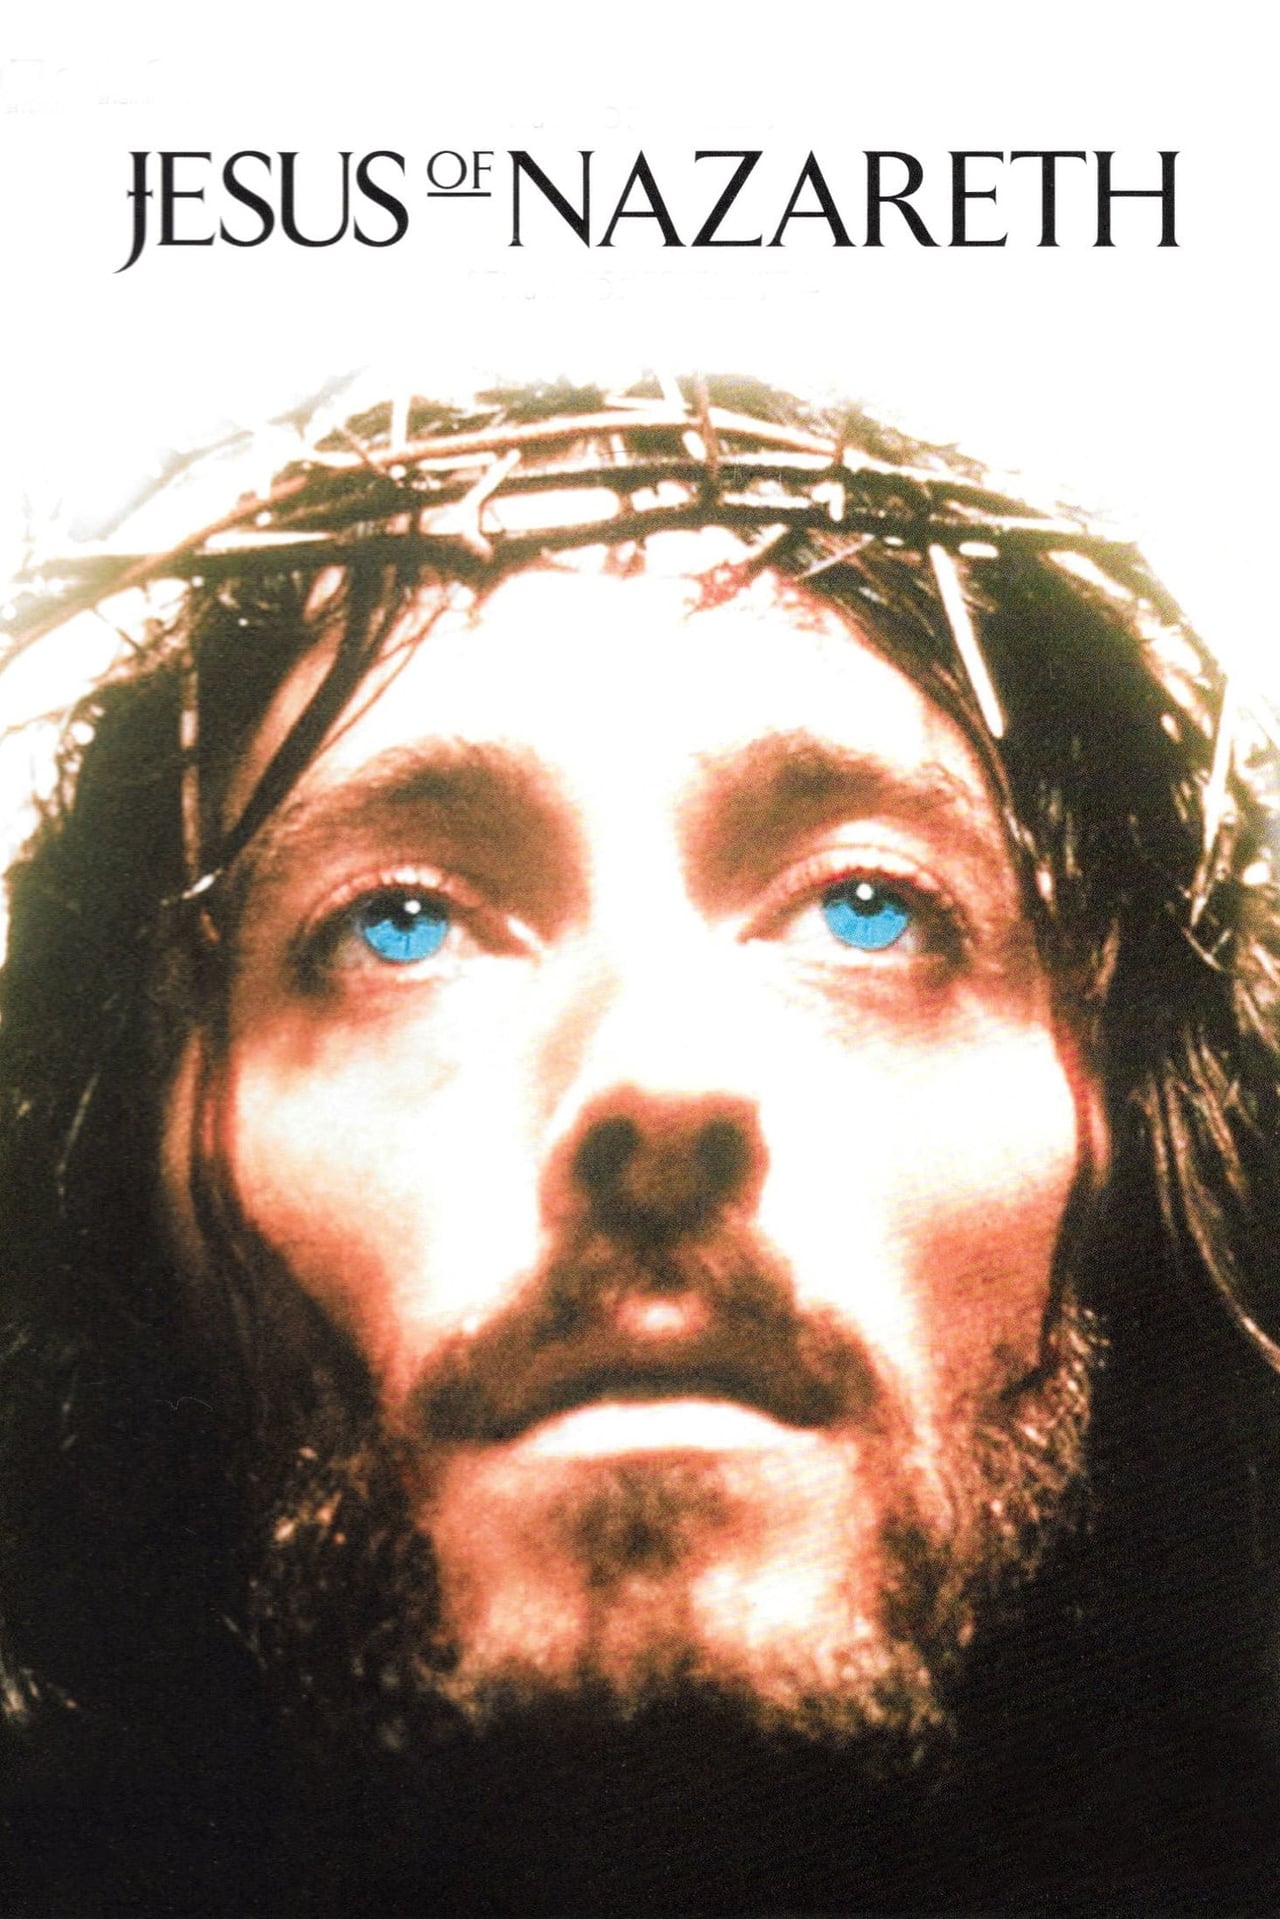 NF - Jesus of Nazareth Part 1